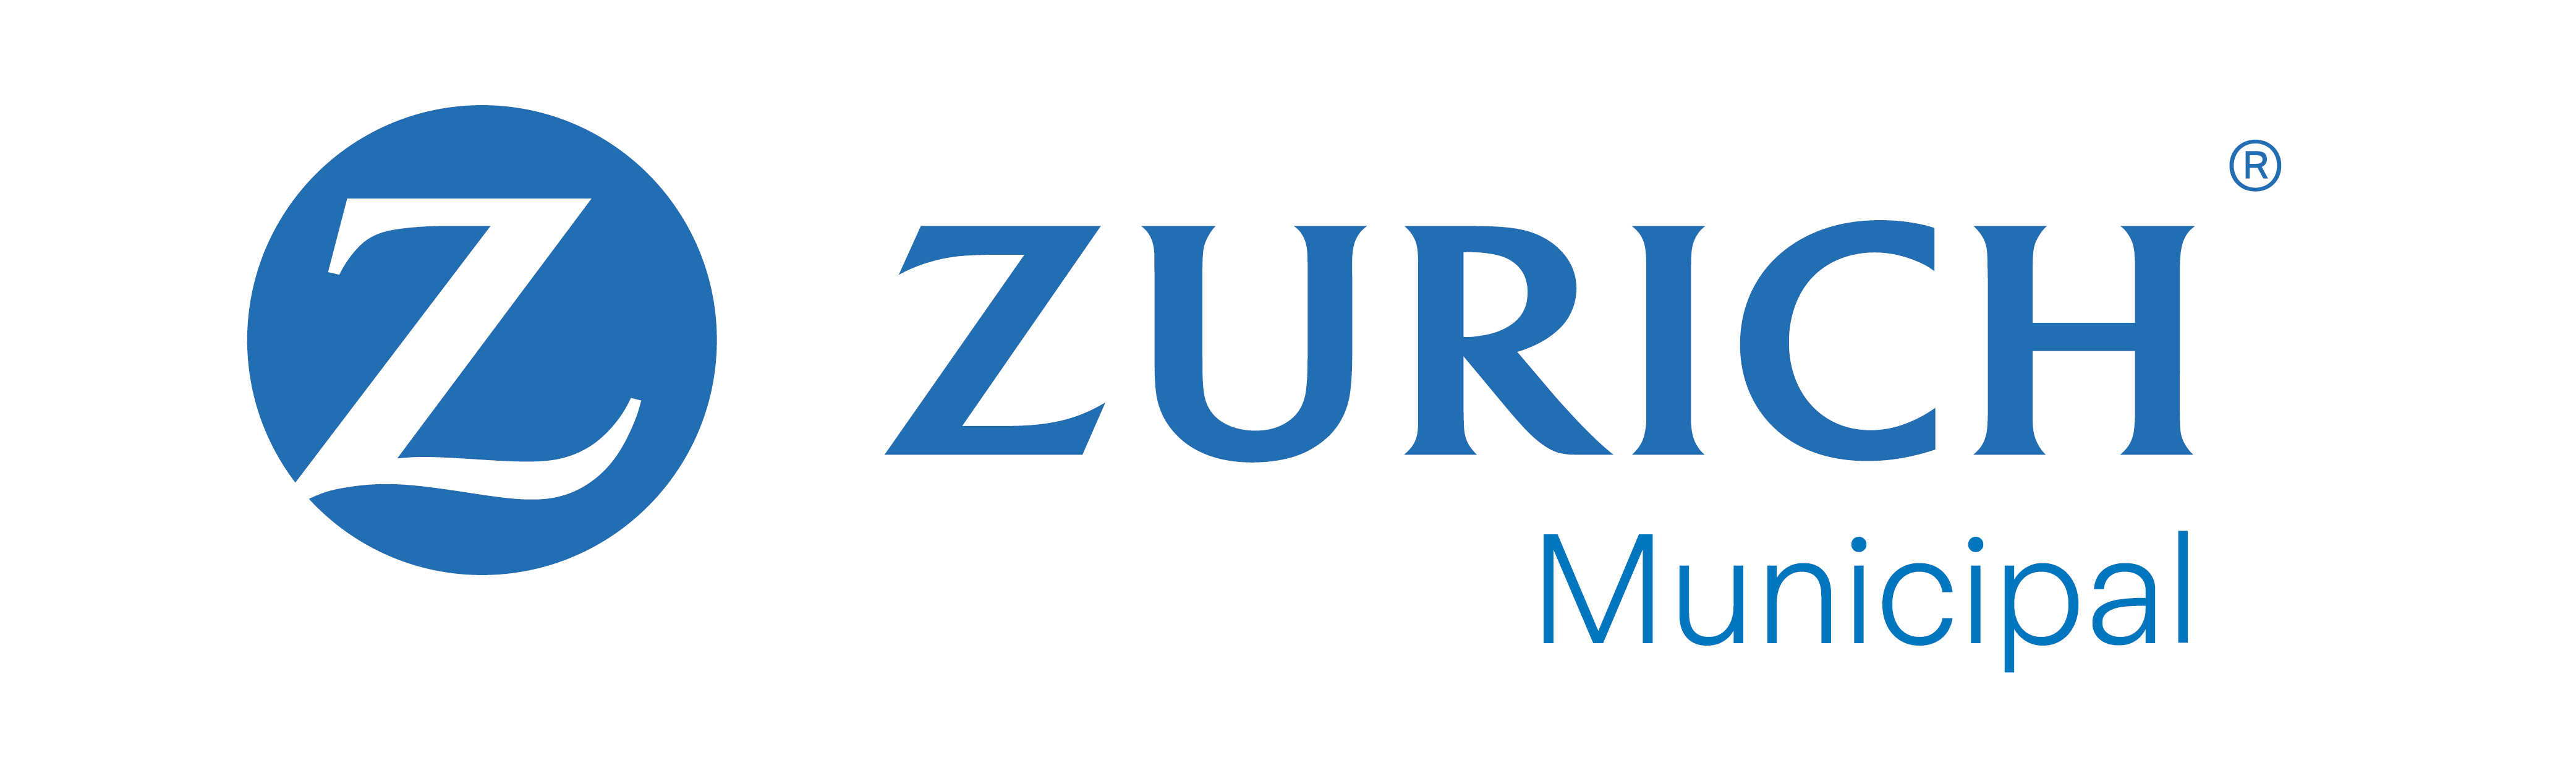 Zurich Municipal logo